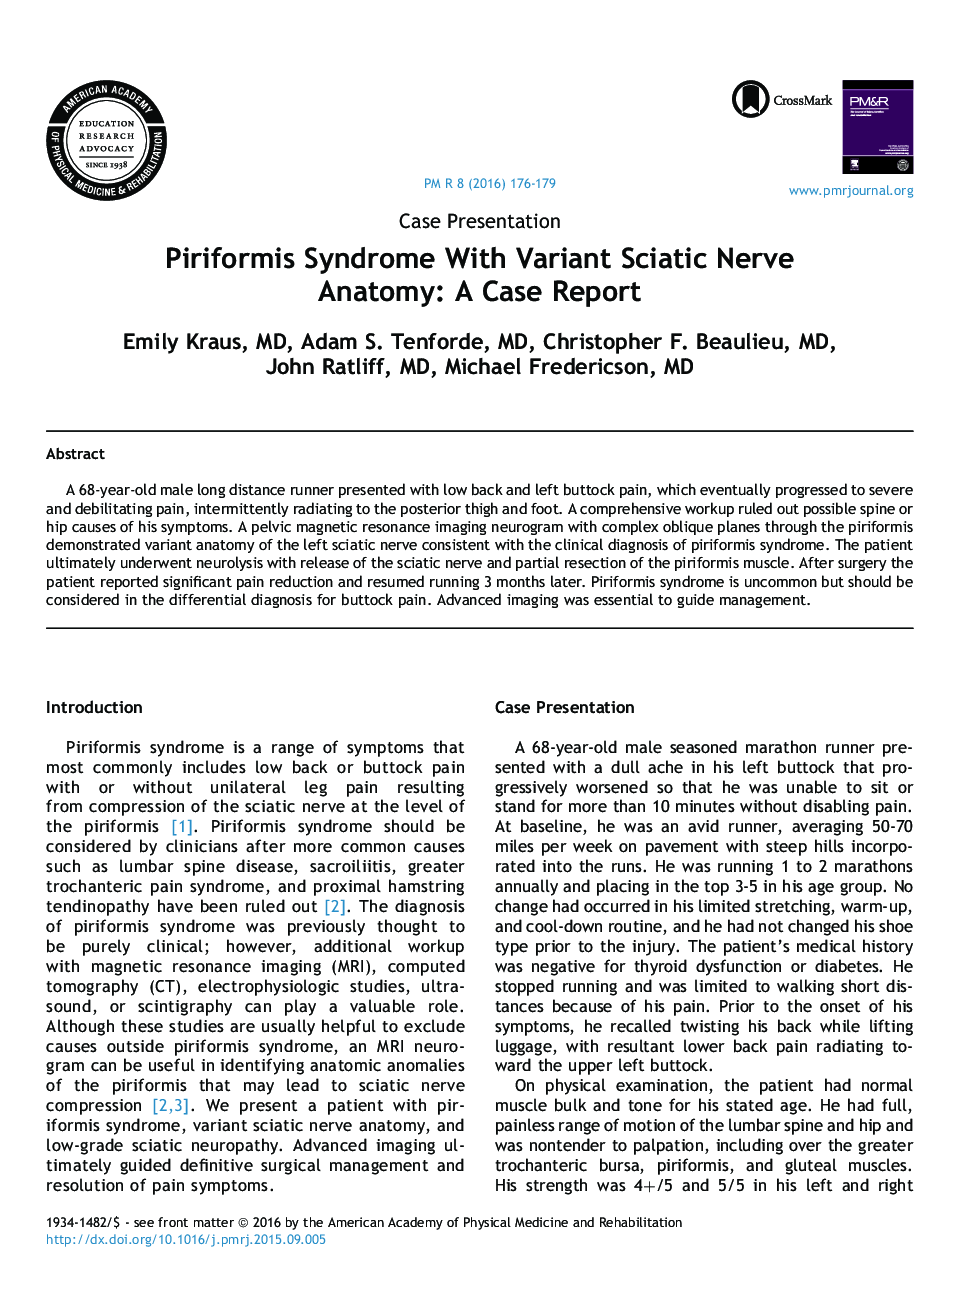 سندرم Piriformis با آناتومی عصب نوع سیاتیک: گزارش یک مورد